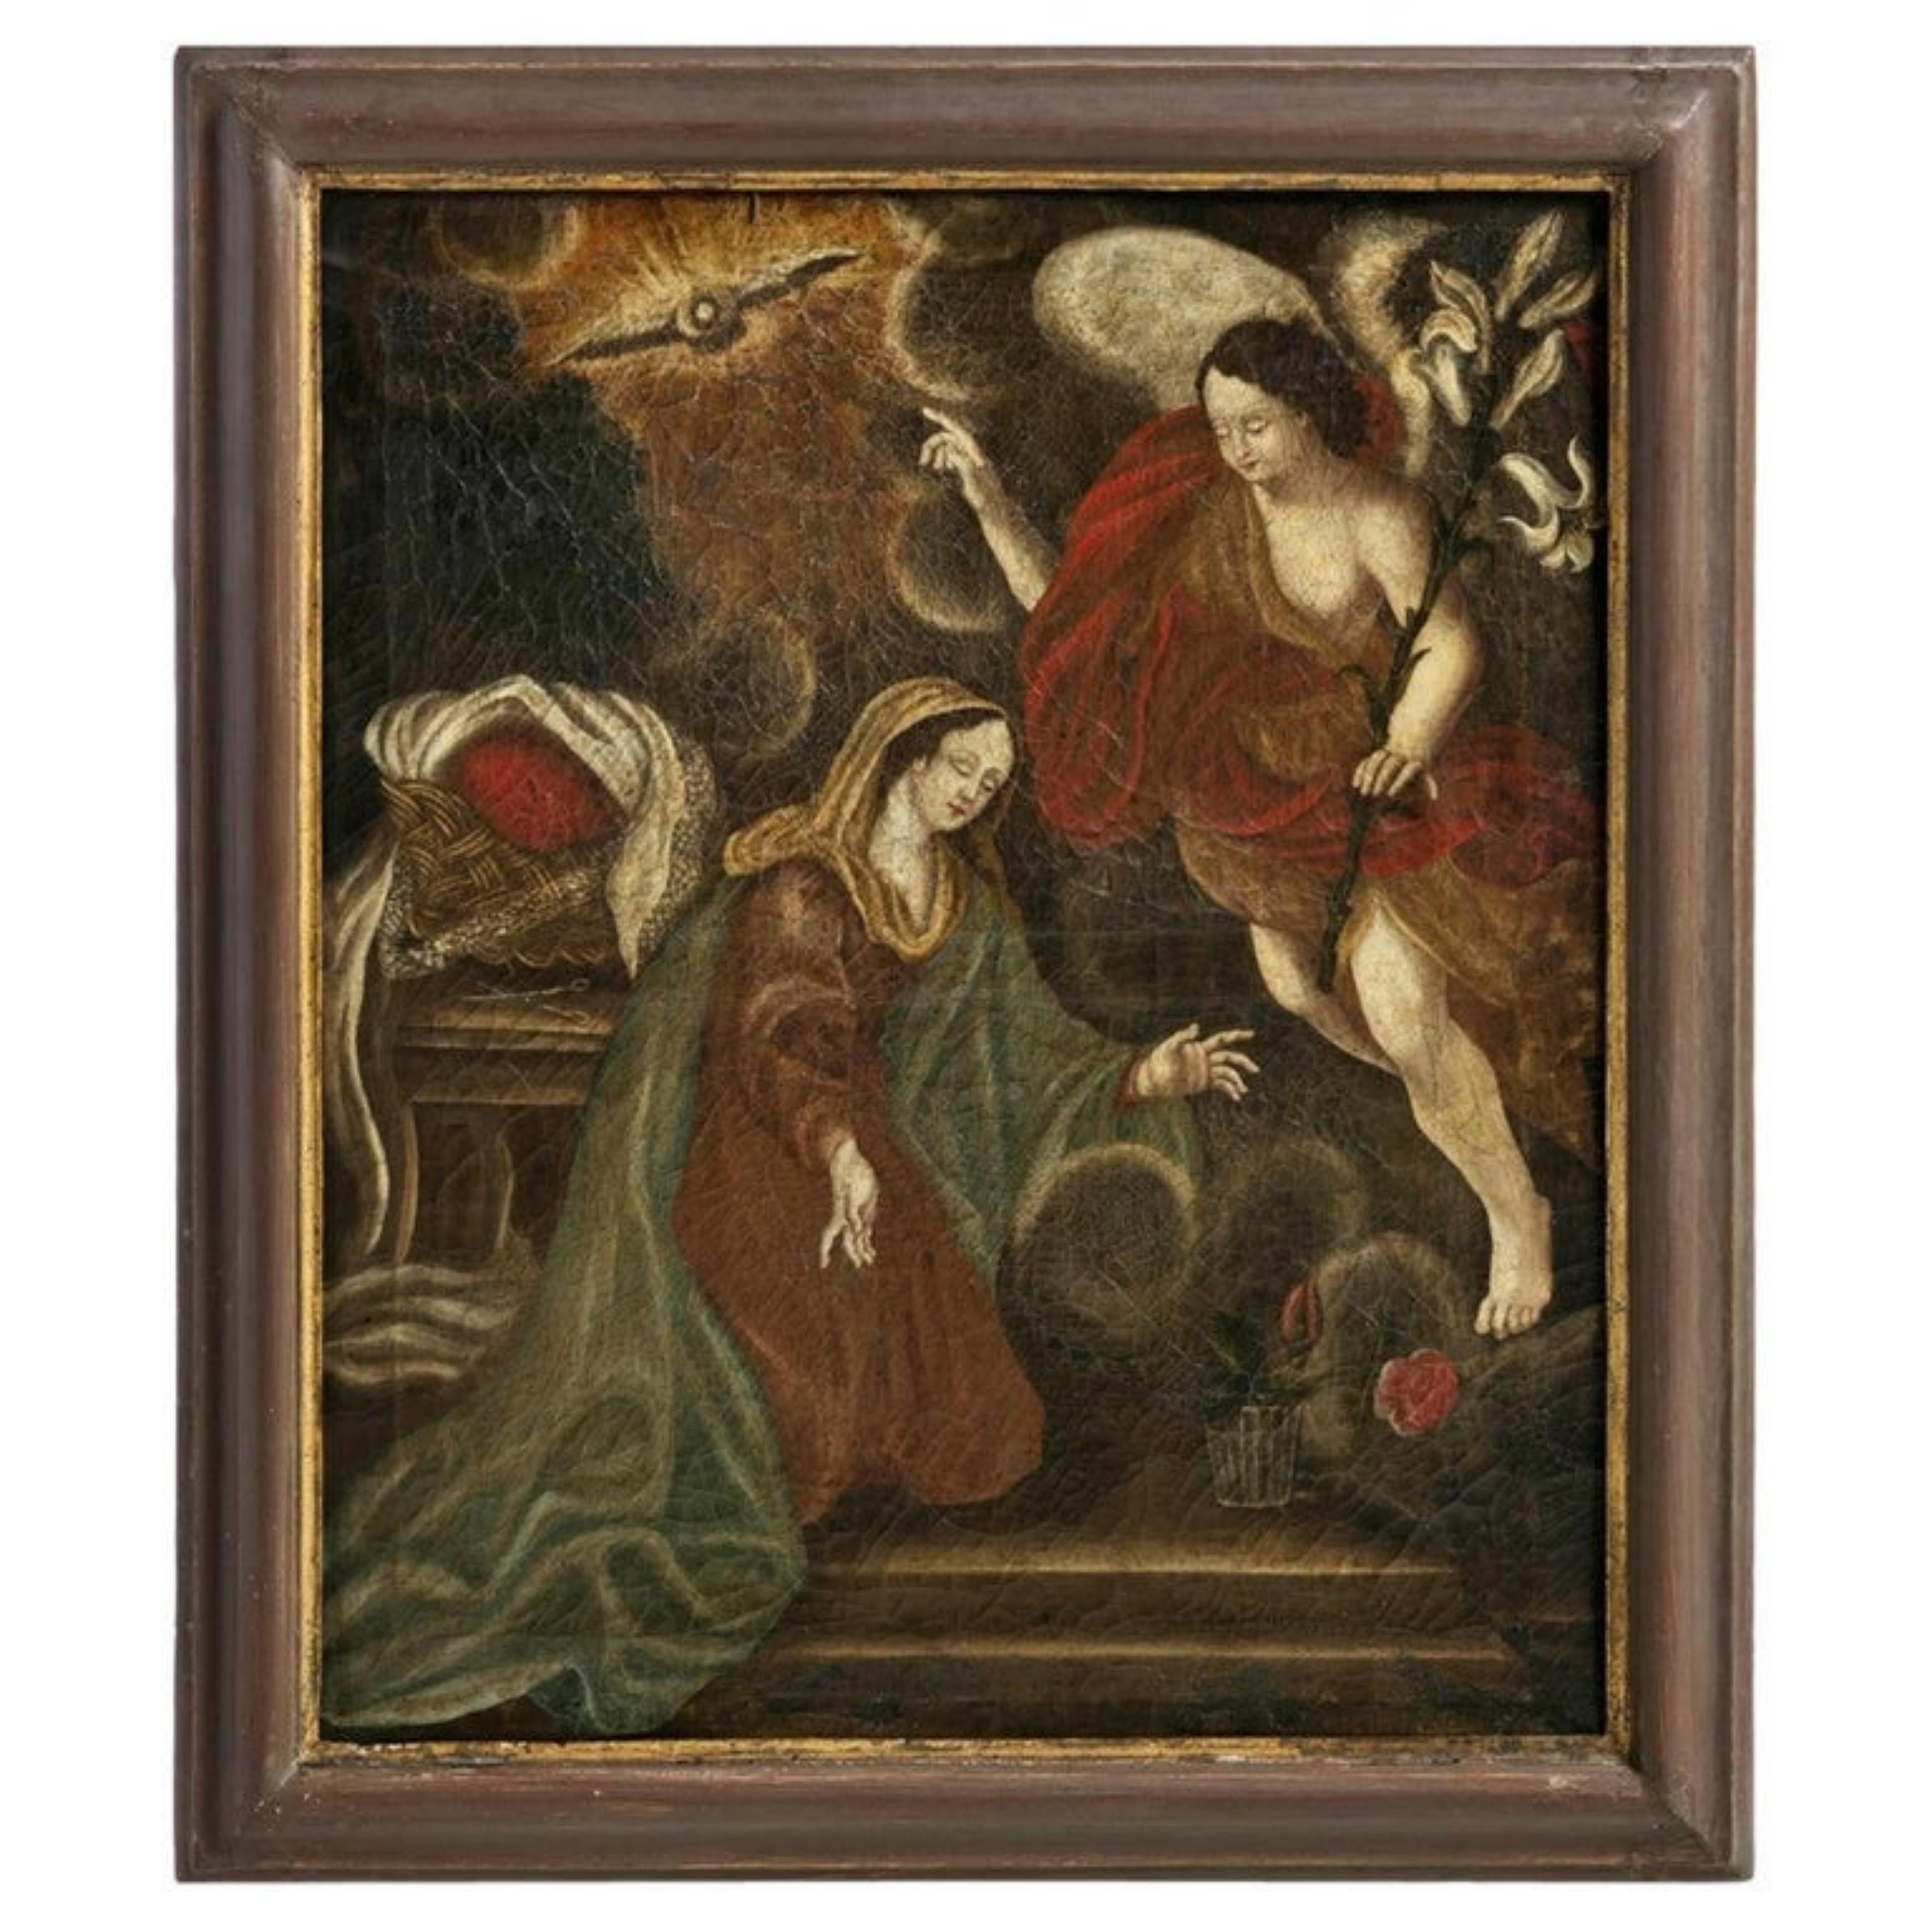 Annonce
École italienne
Huile sur toile,
du 17ème siècle
Dimension : 75 x 62 cm.
Bonnes conditions.